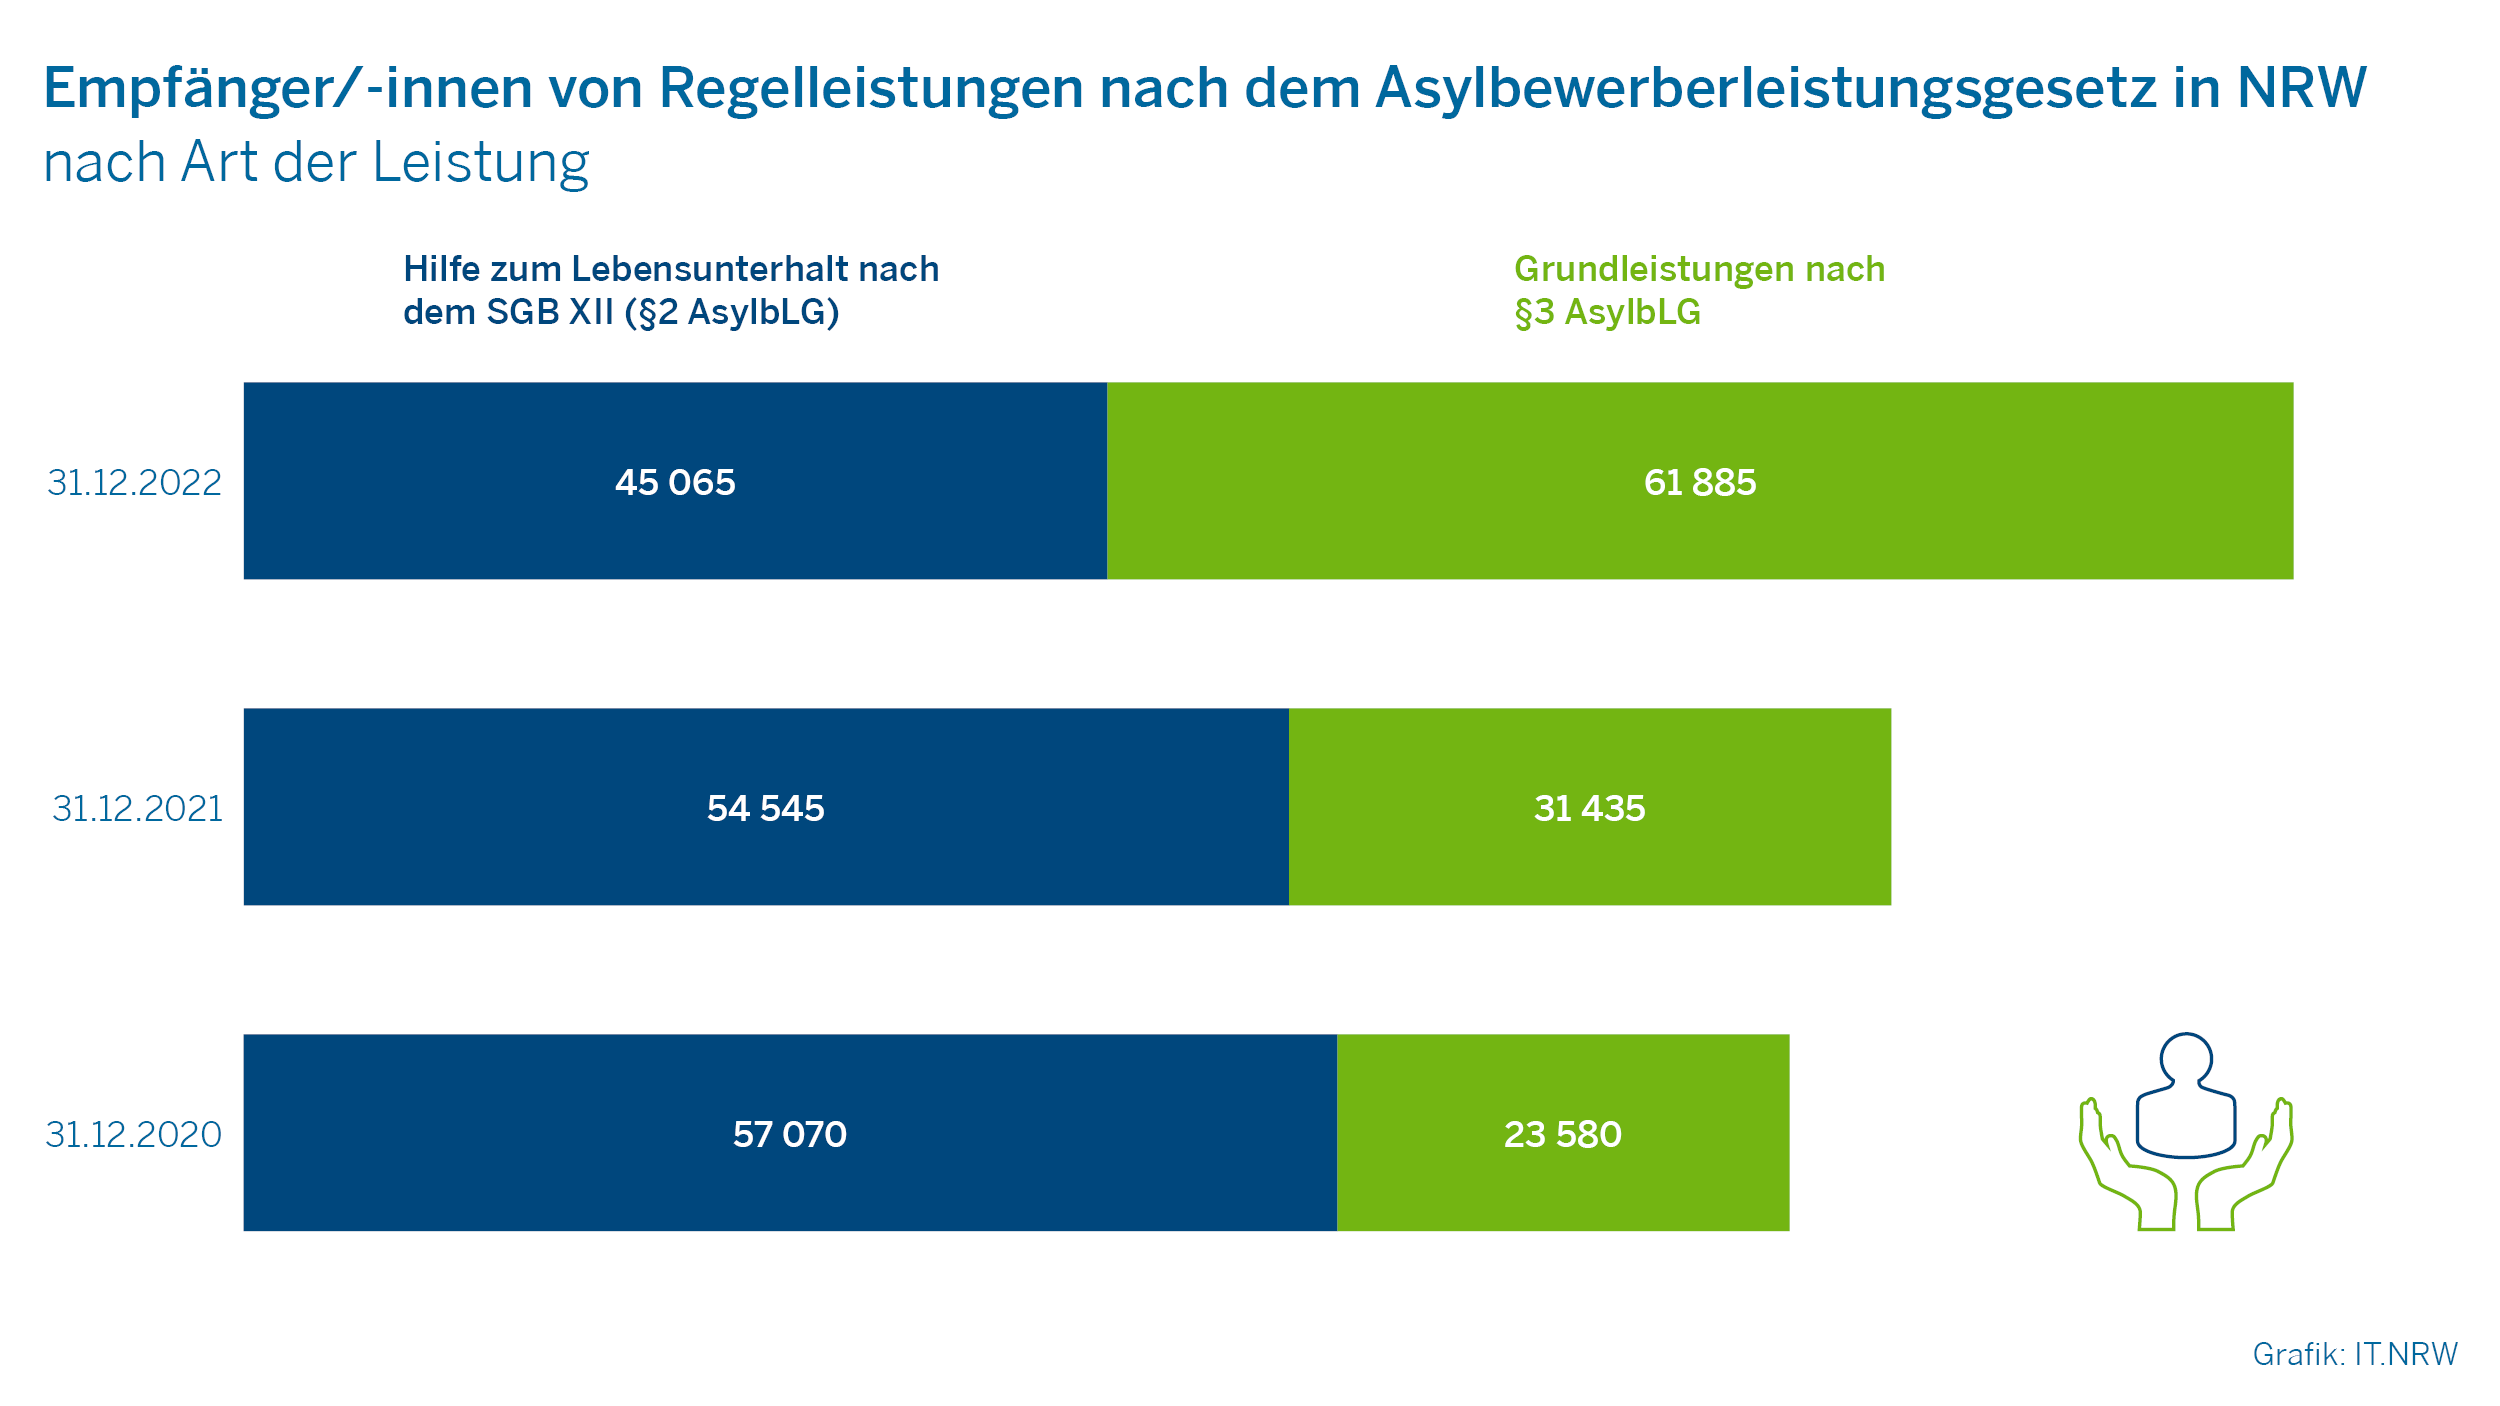 Empfänger/-innen von Regelleistungen nach dem Asylbewerberleistungsgesetz in NRW nach Art der Leistung